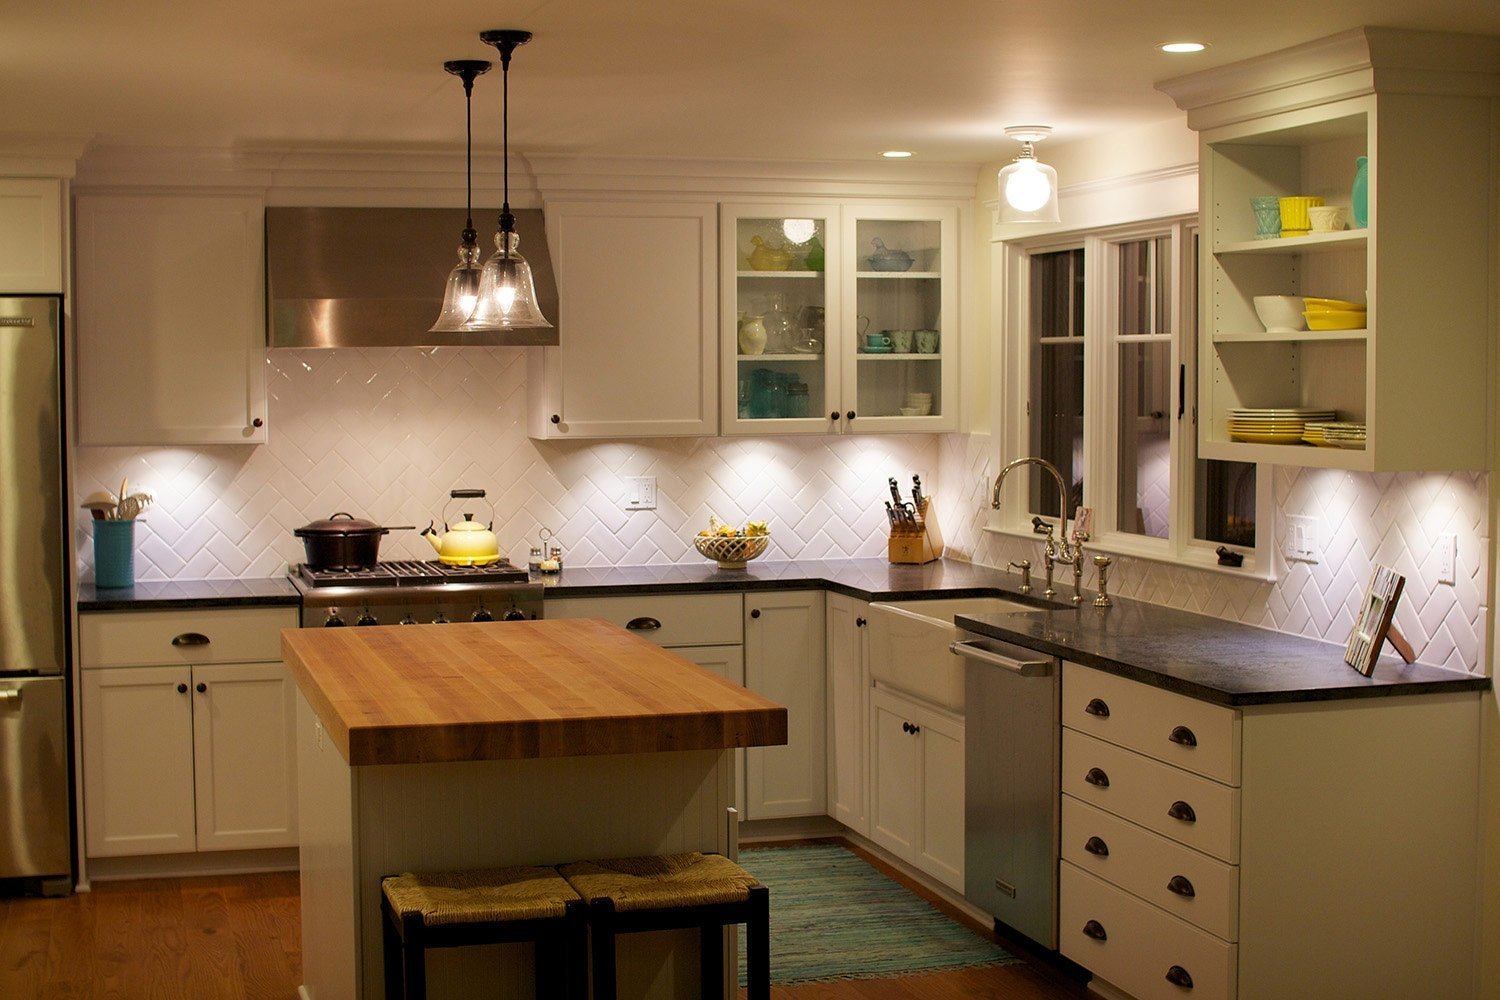 Освещение на кухне: как правильно организовать освещение на кухне